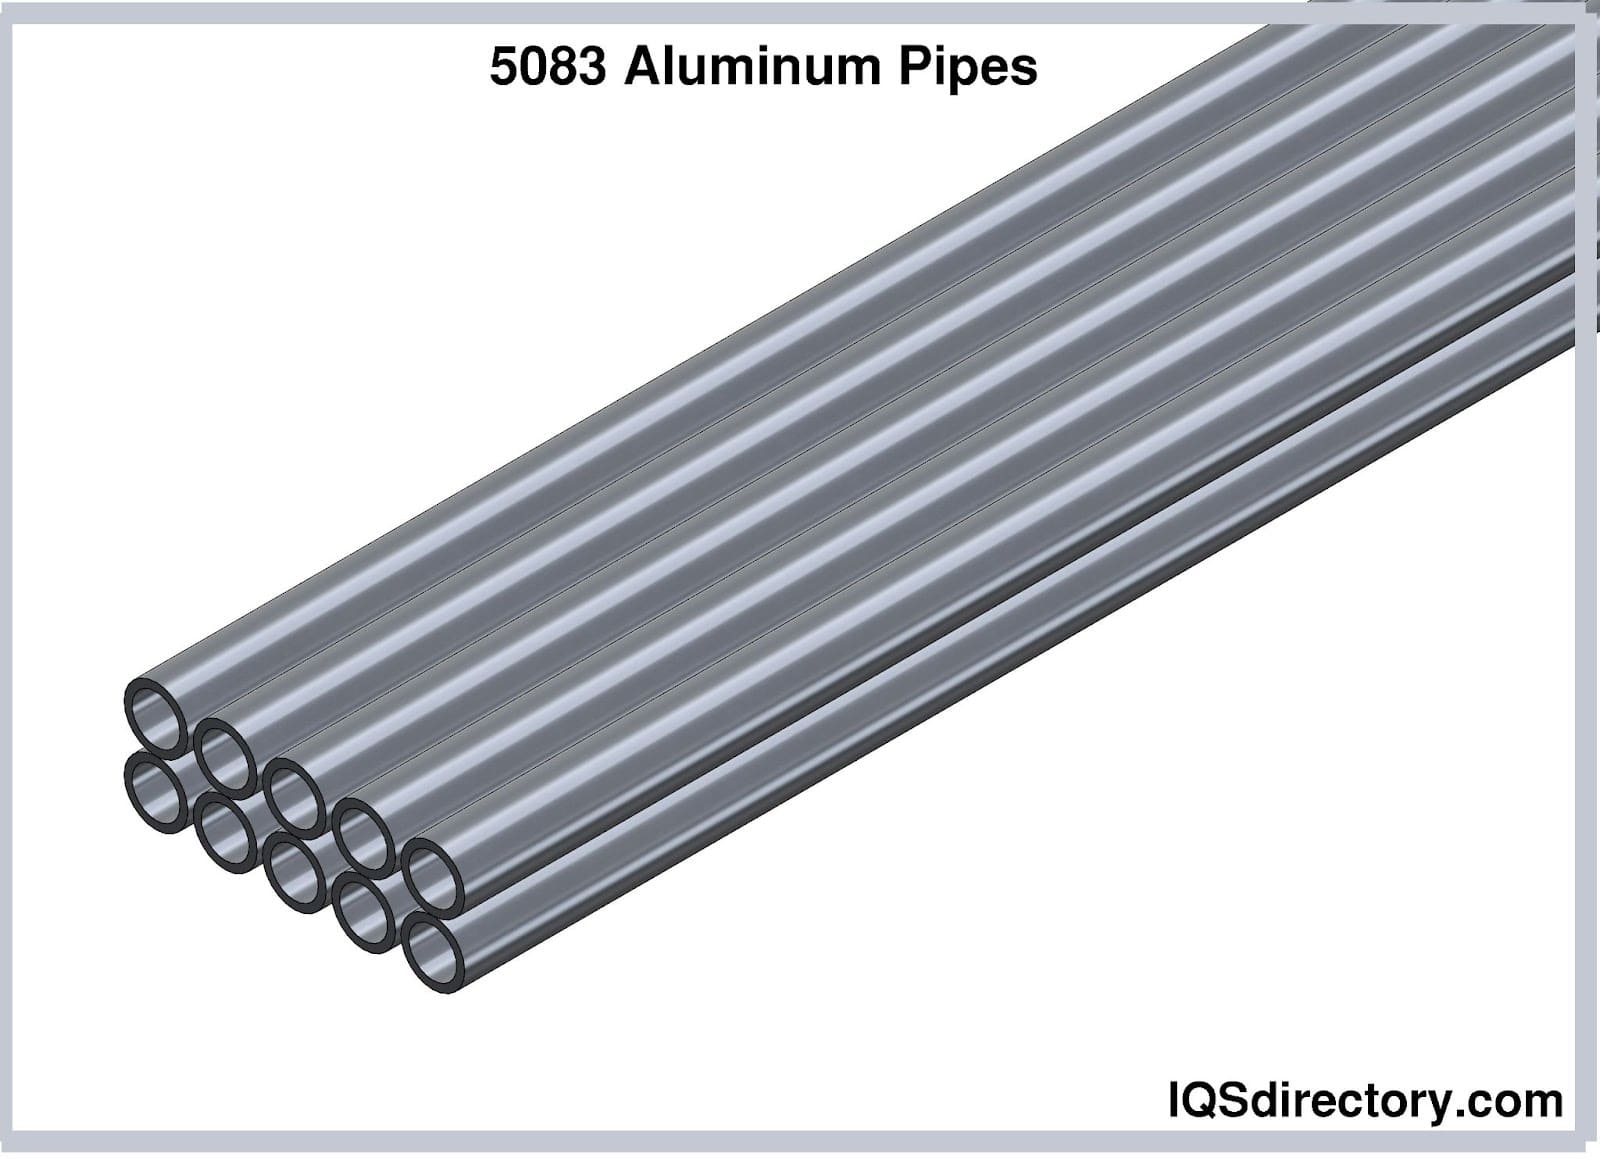 5083 Aluminum Pipes